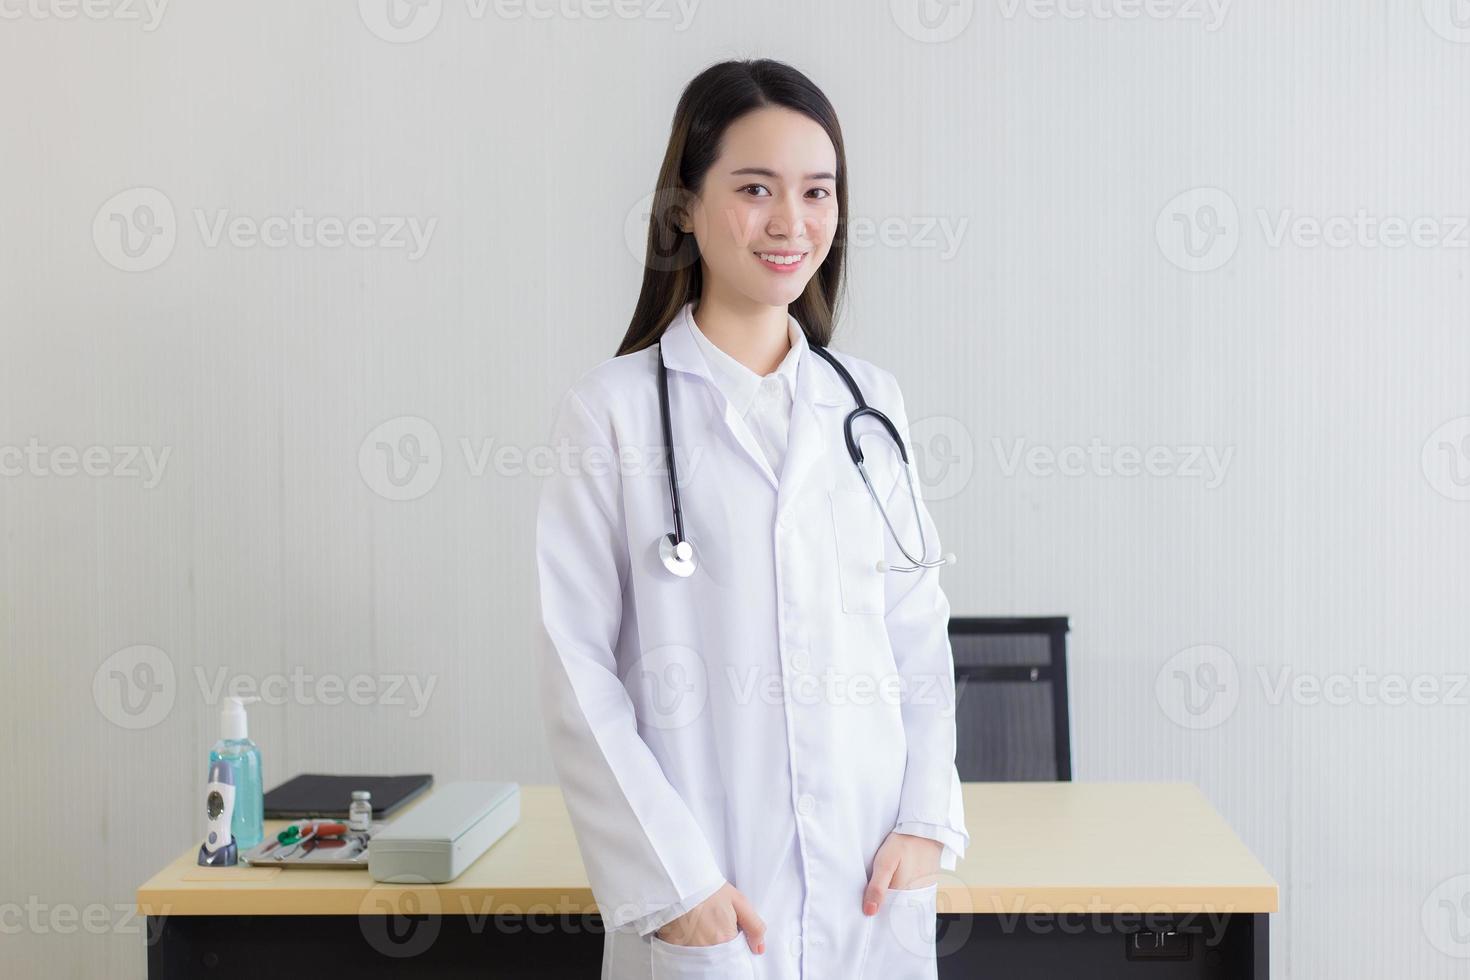 een aziatische vrouwelijke arts met een witte laboratoriumjas die staat en een wit gewaad en een stethoscoop draagt. foto